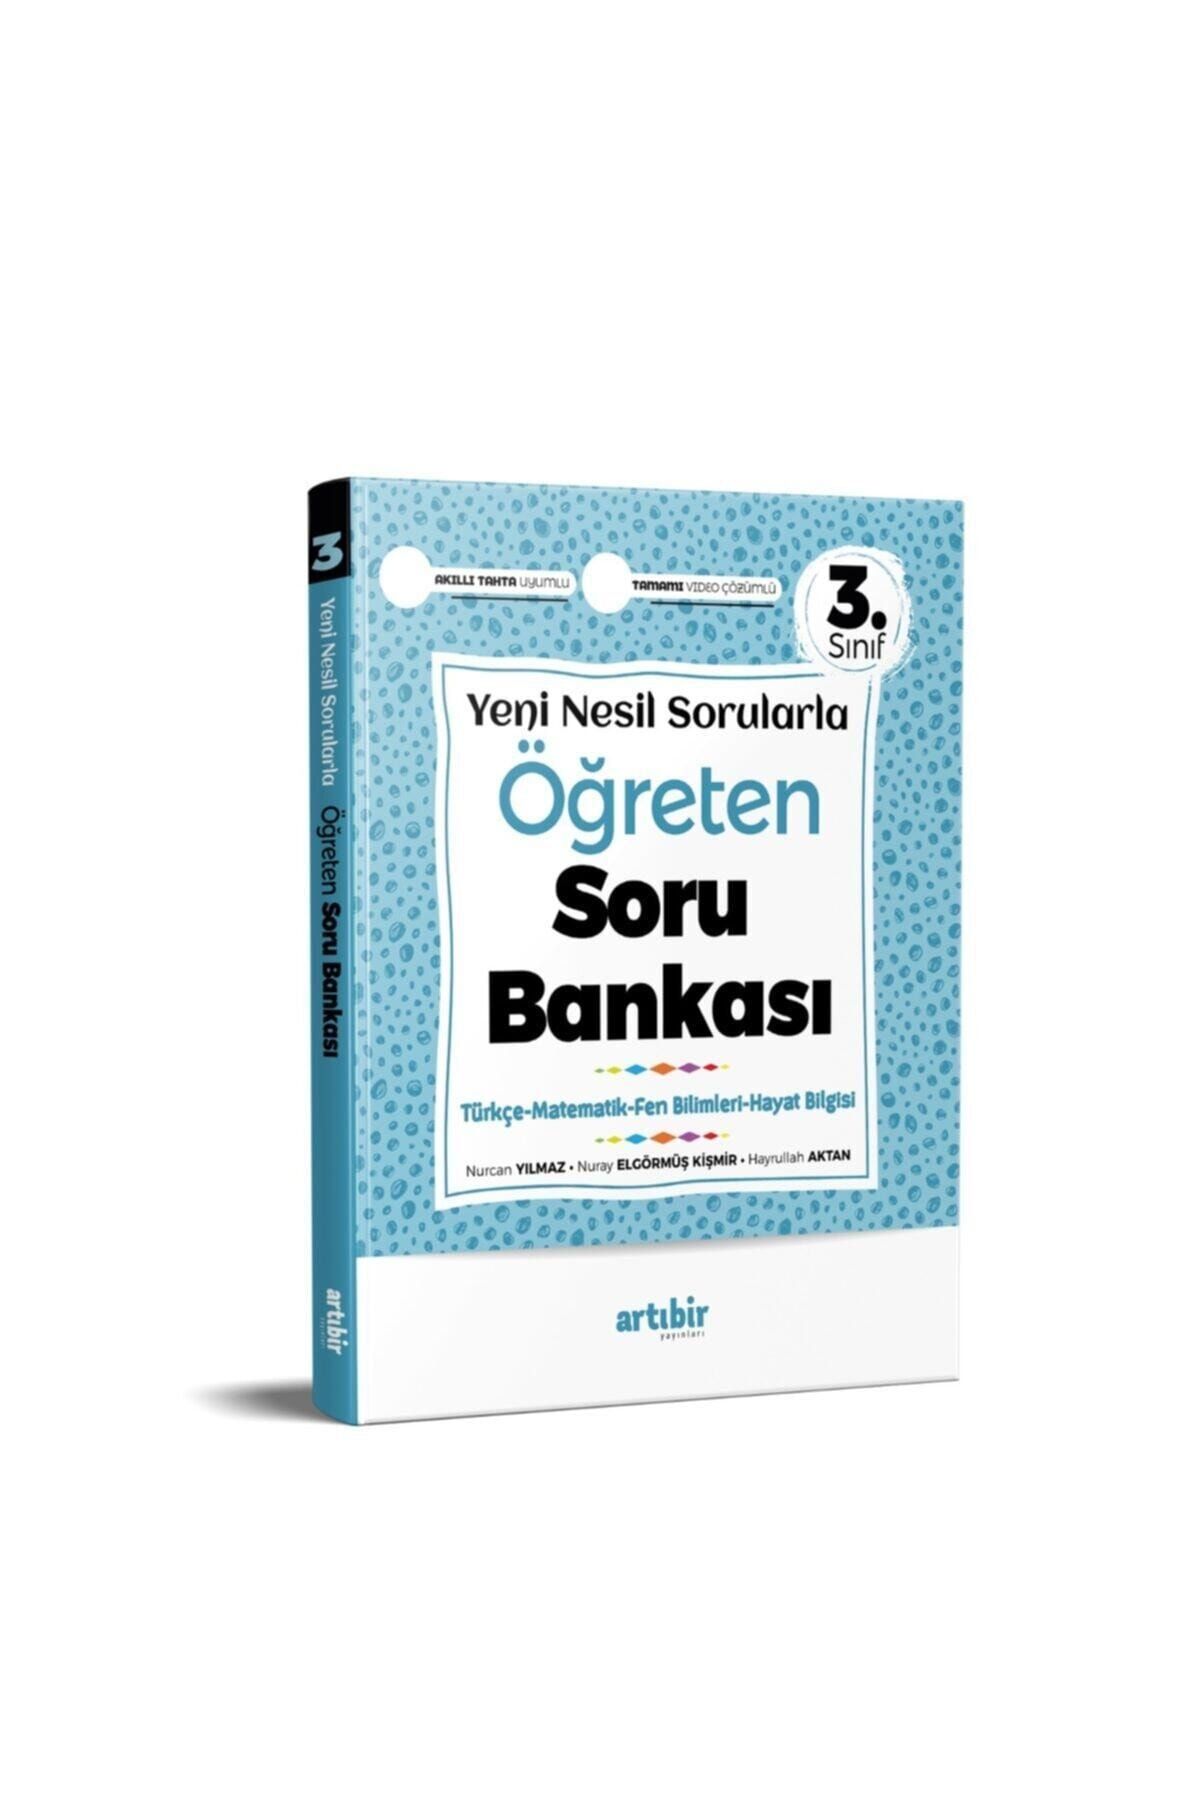 Artıbir Yayınları Yeni Nesil Sorularla Öğreten Soru Bankası 3.sınıf